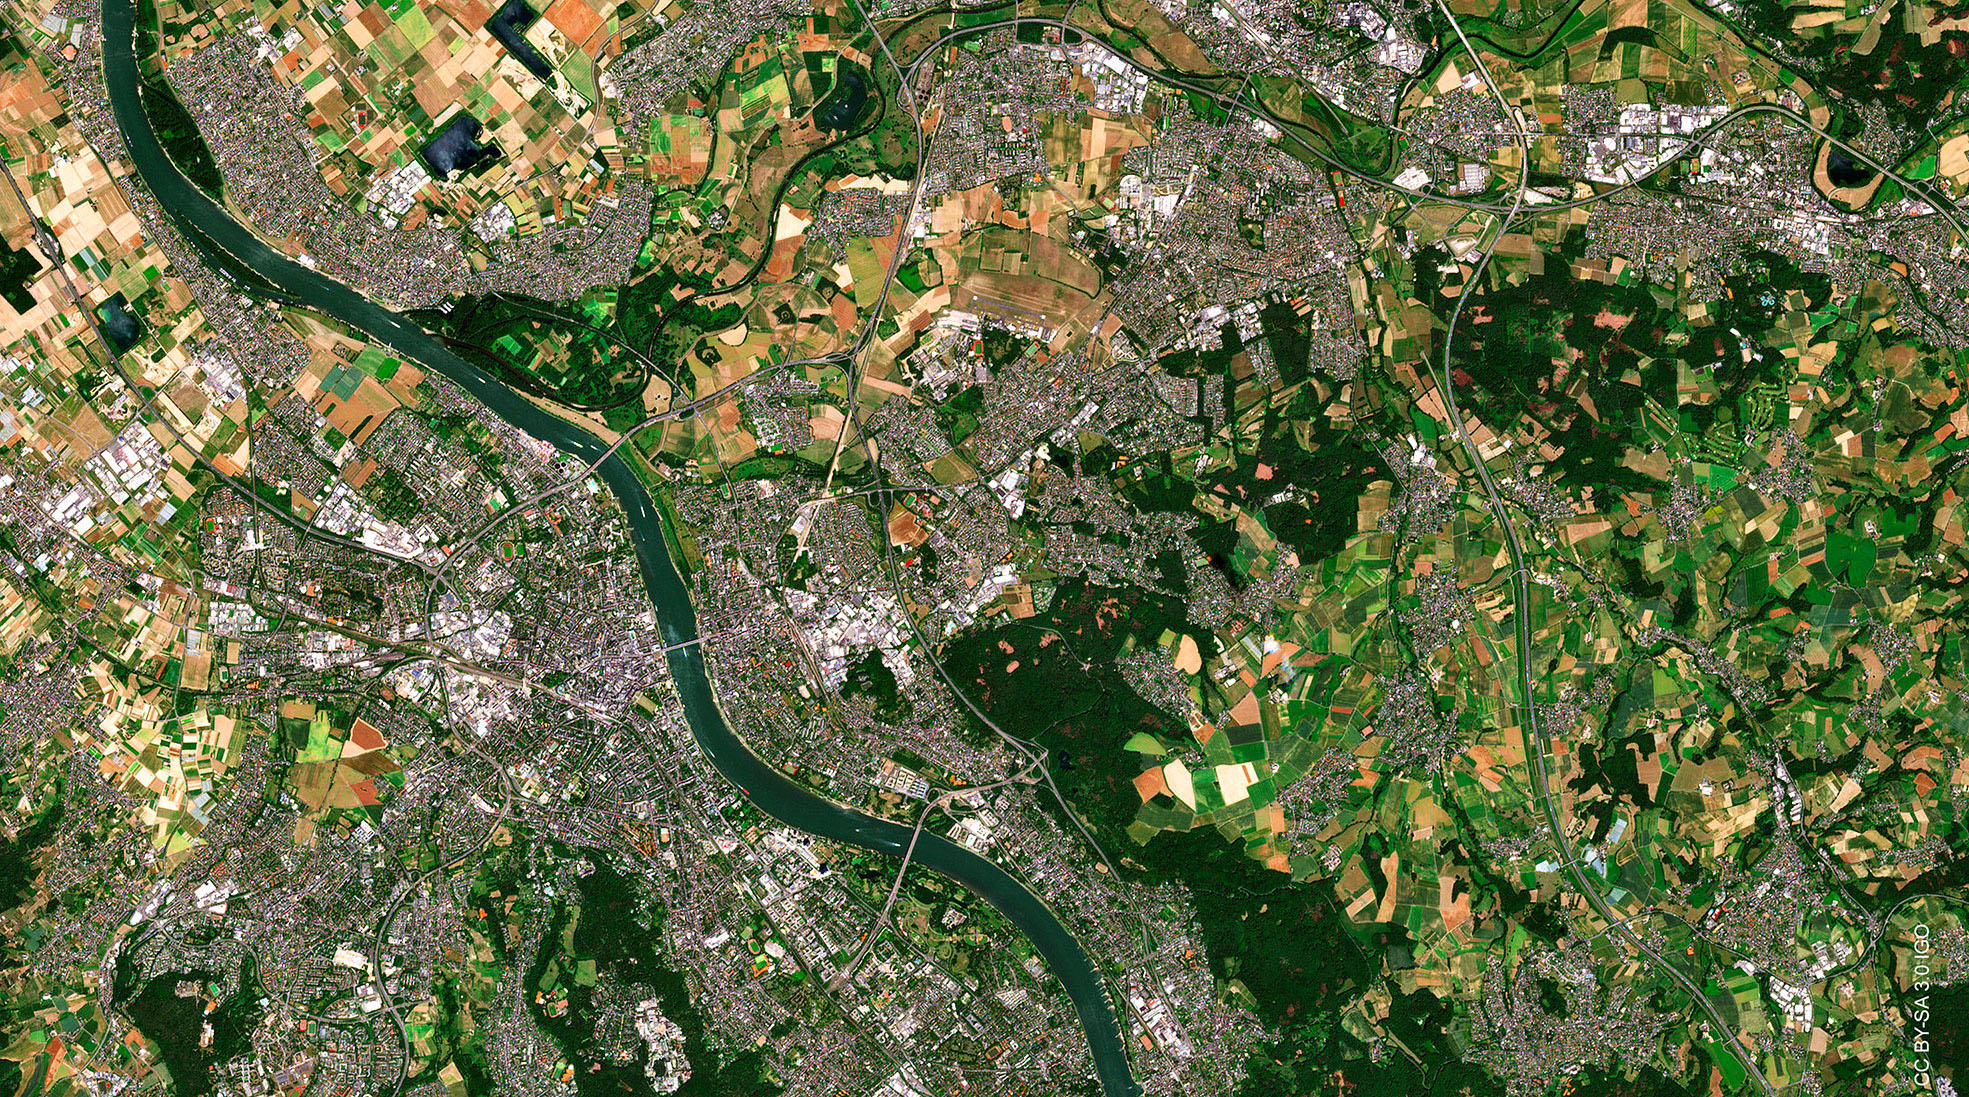 La ville de Bonn (Allemagne), qui a accueilli le Living Planet Symposium 2022, vue par le satellite Sentinel-2.